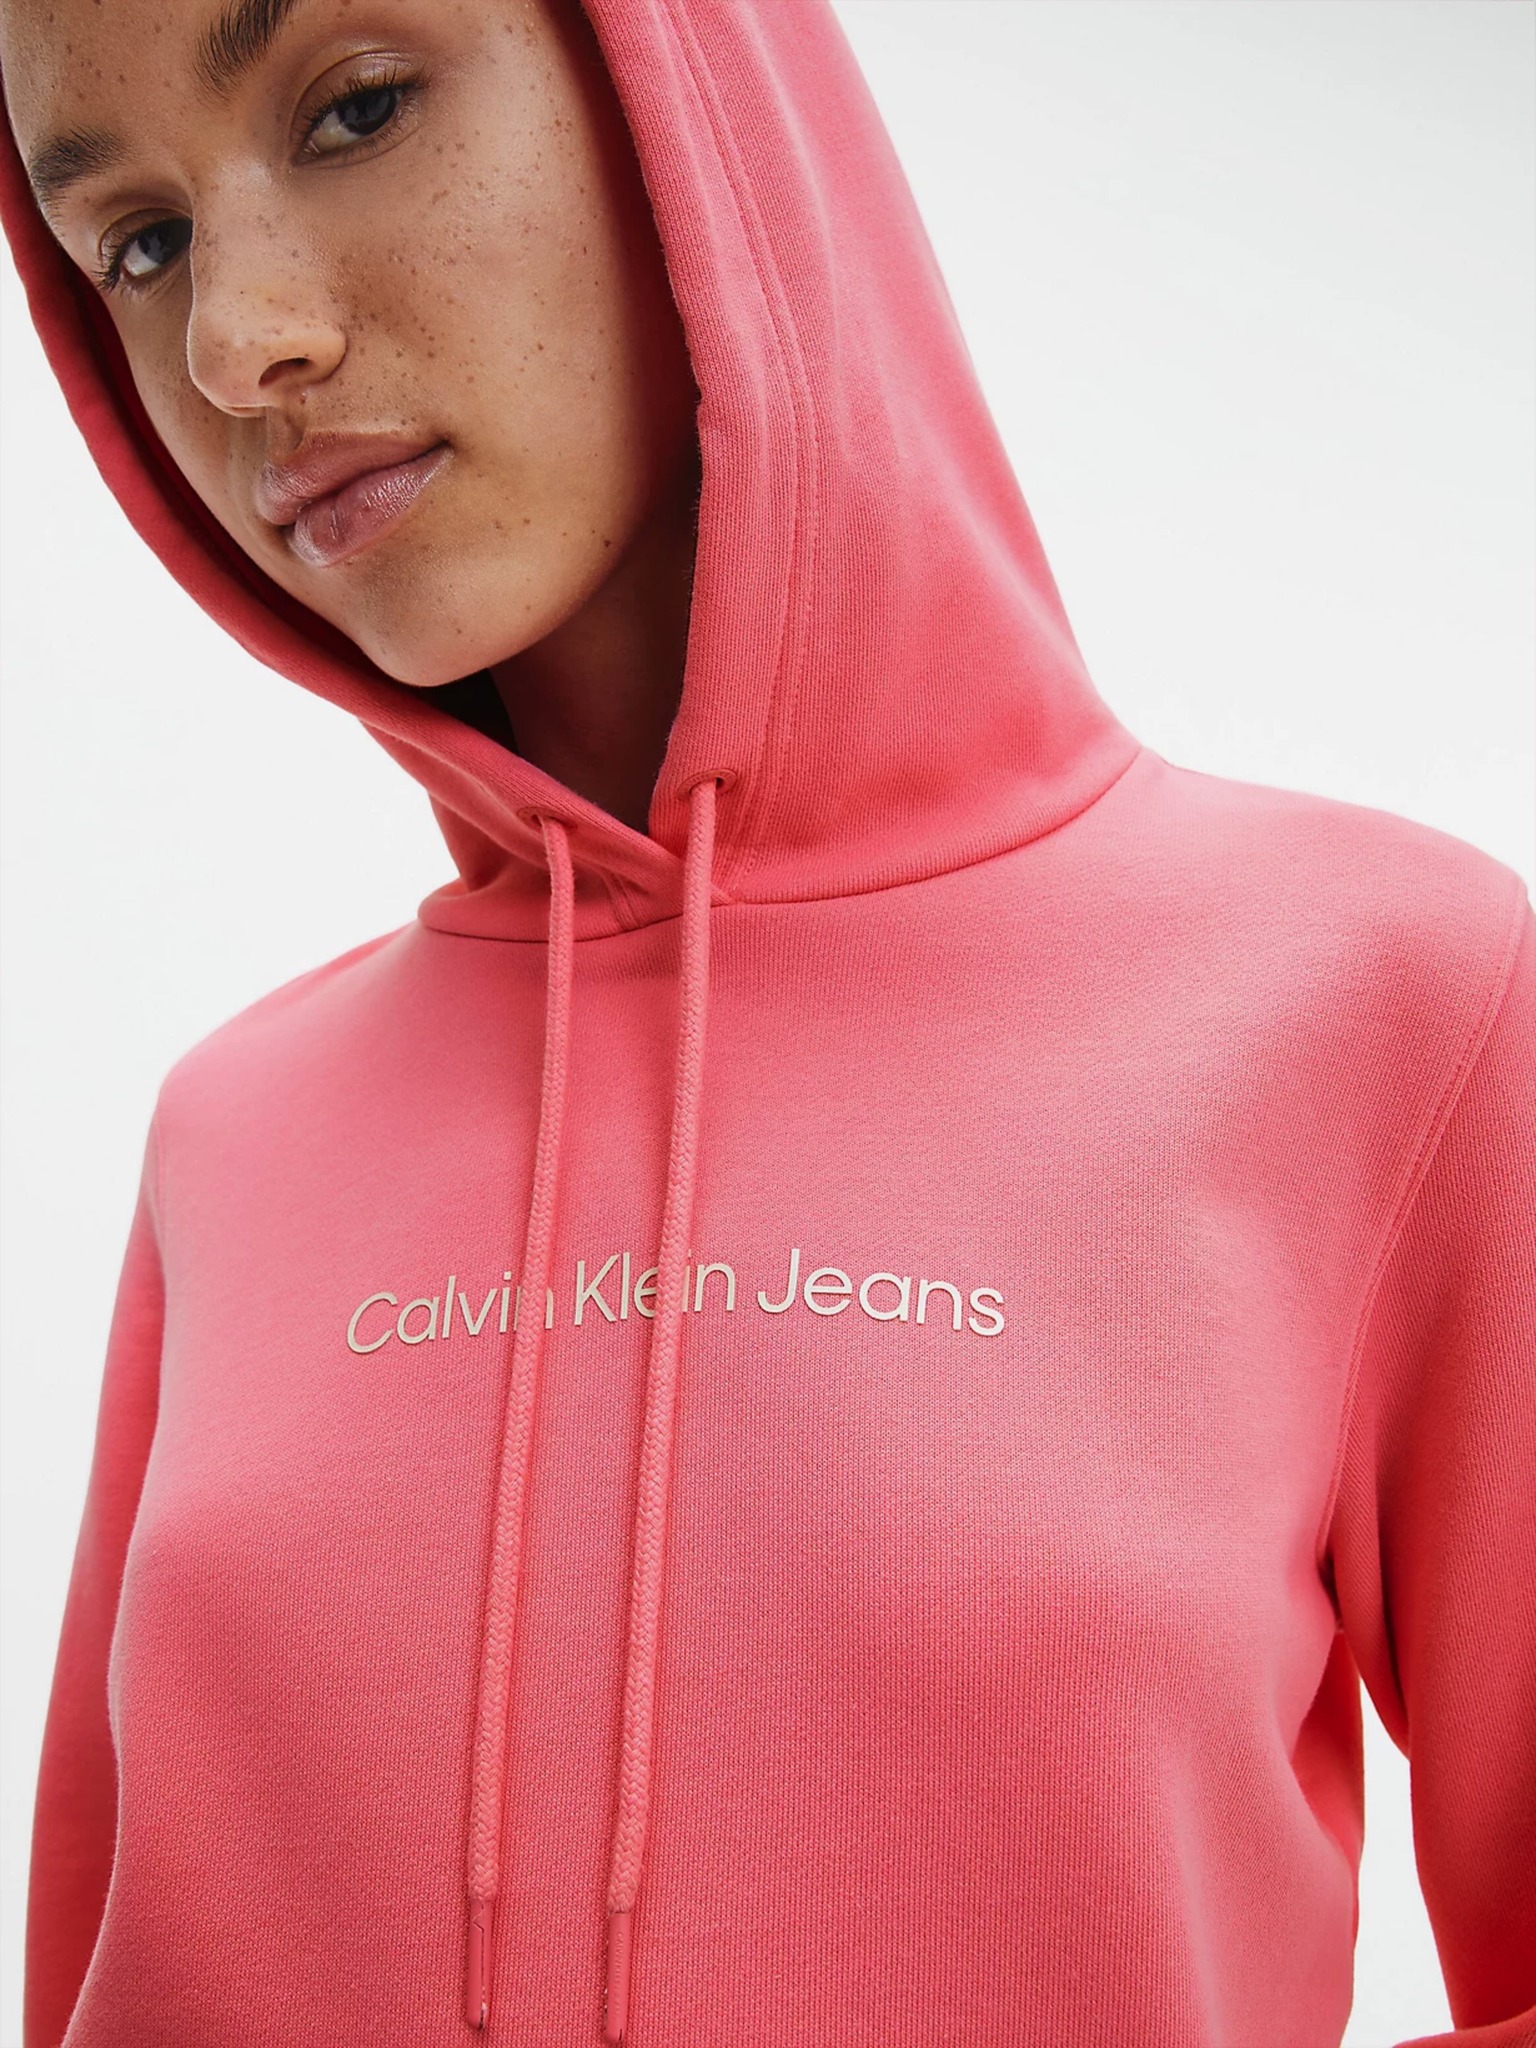 Jeans Calvin Klein - Sweatshirt